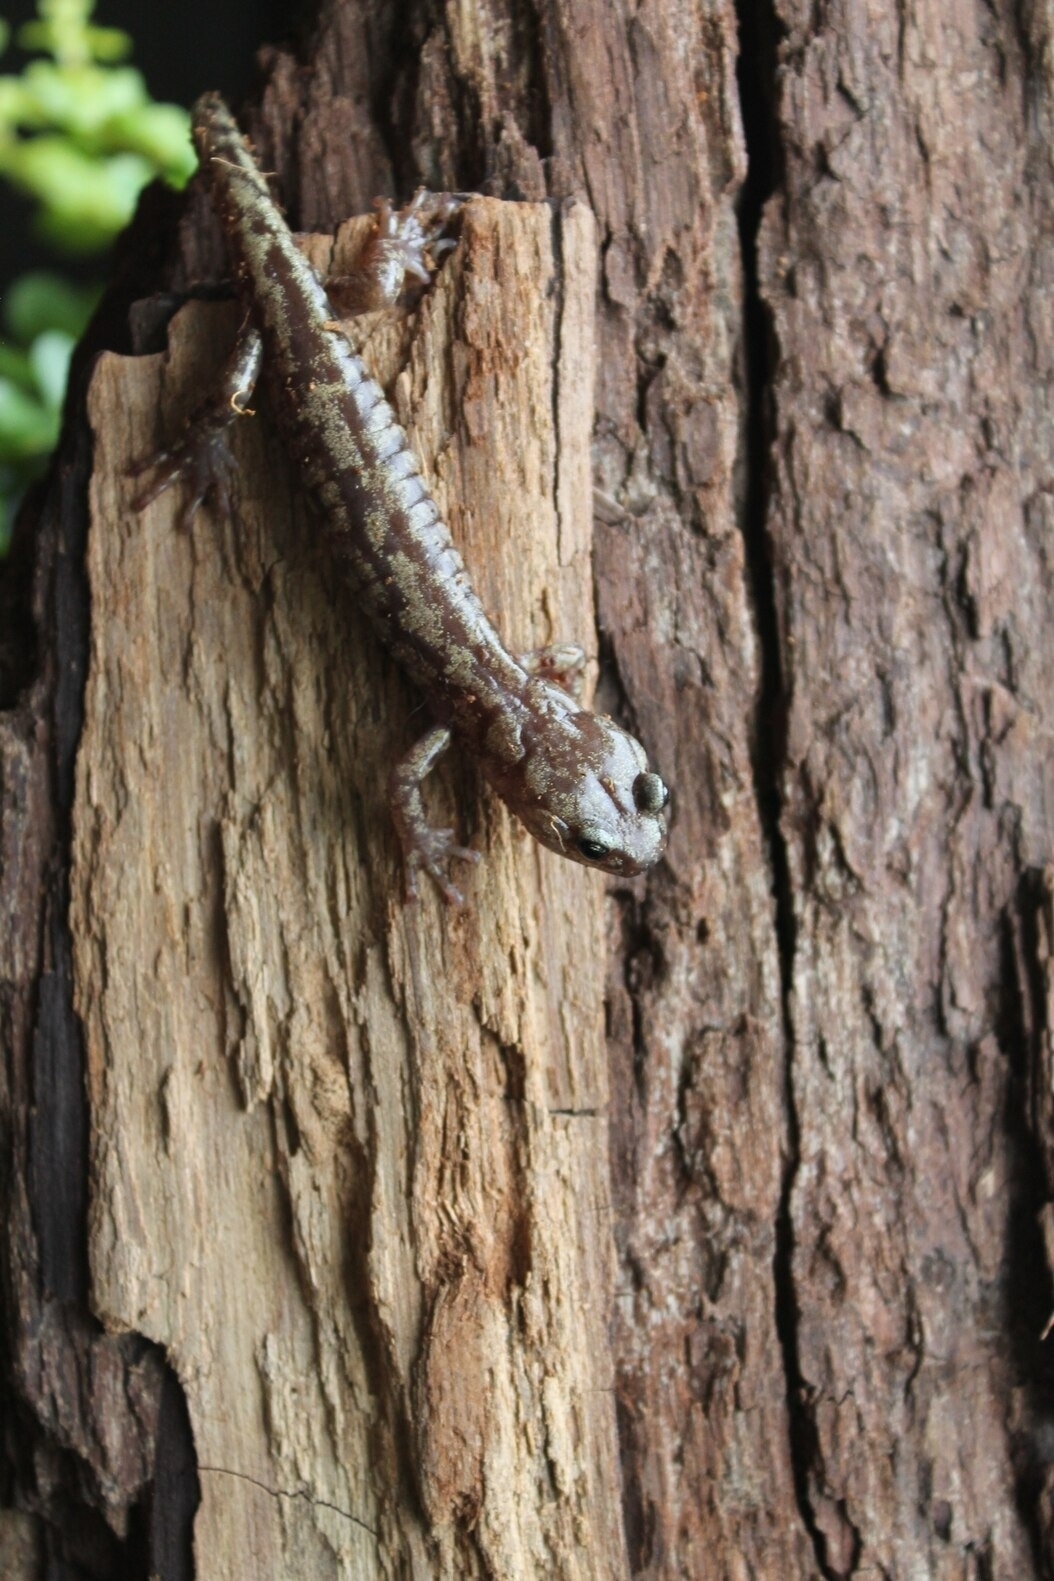 一隻流浪蠑螈攀在加州紅杉的樹皮上。這種10公分長的兩生類以這種鮮少有人研究的樹冠為家。PHOTOGRAPH BY CHRISTIAN BROWN